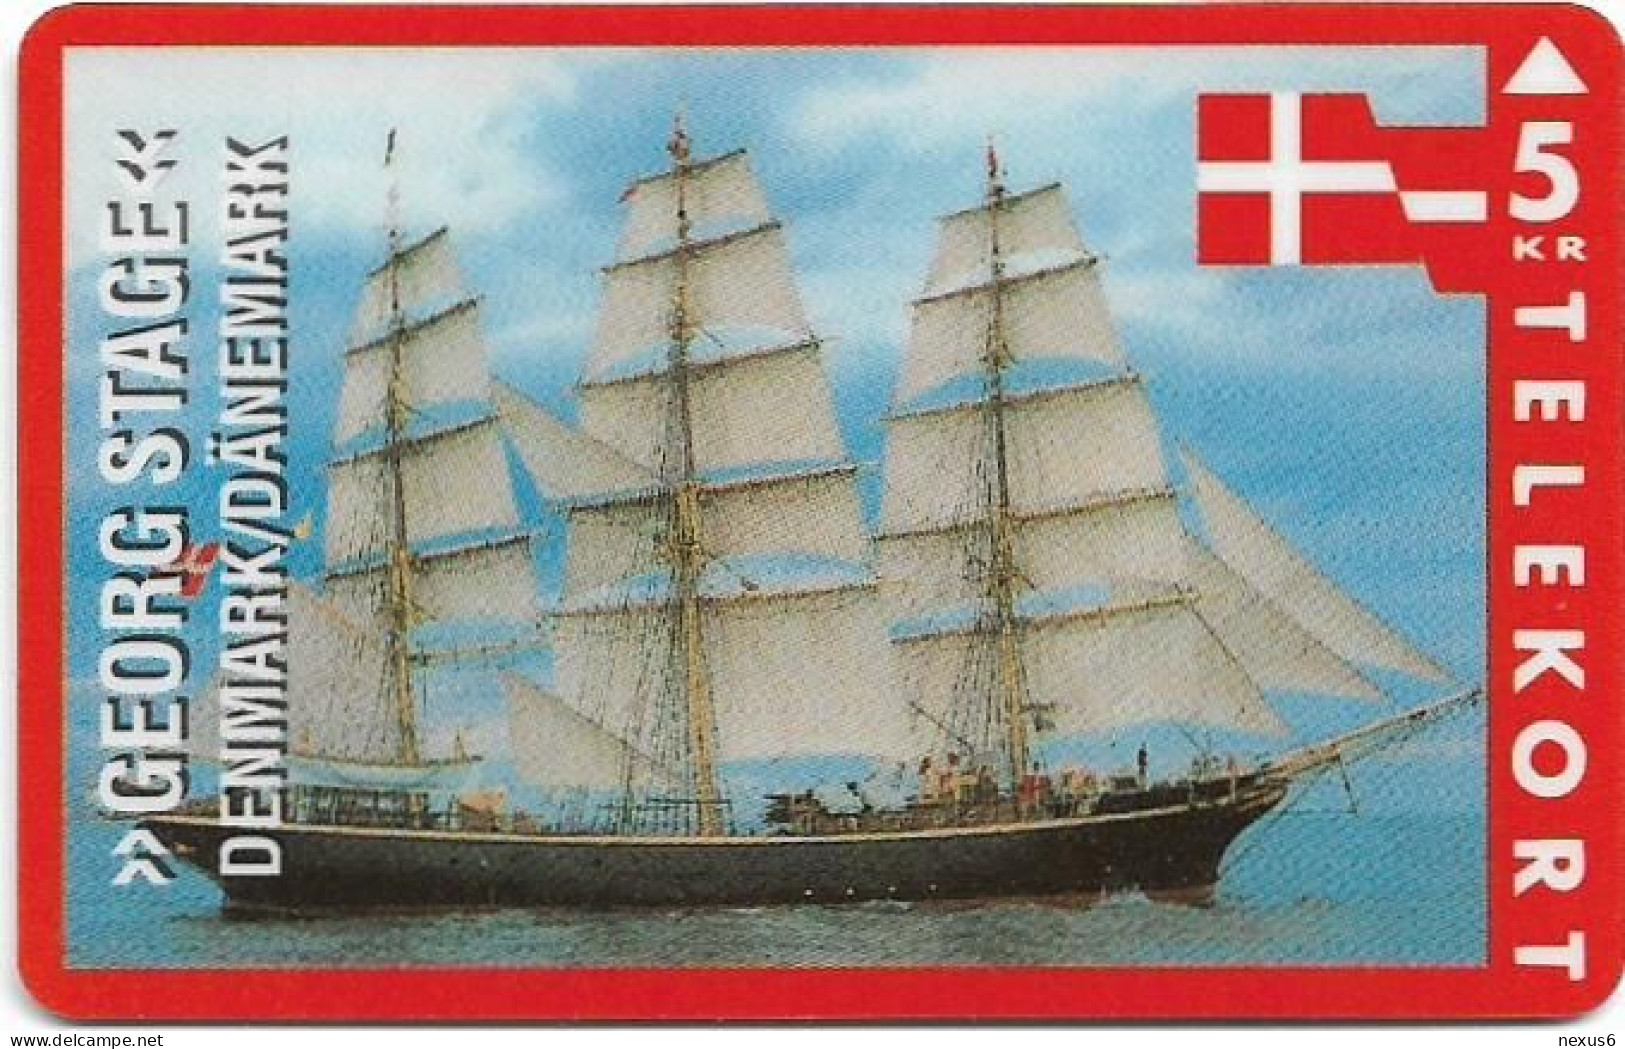 Denmark - KTAS - Ships (Red) - Denmark - Georg Stage - TDKP060 - 01.1994, 5kr, 2.500ex, Used - Denemarken